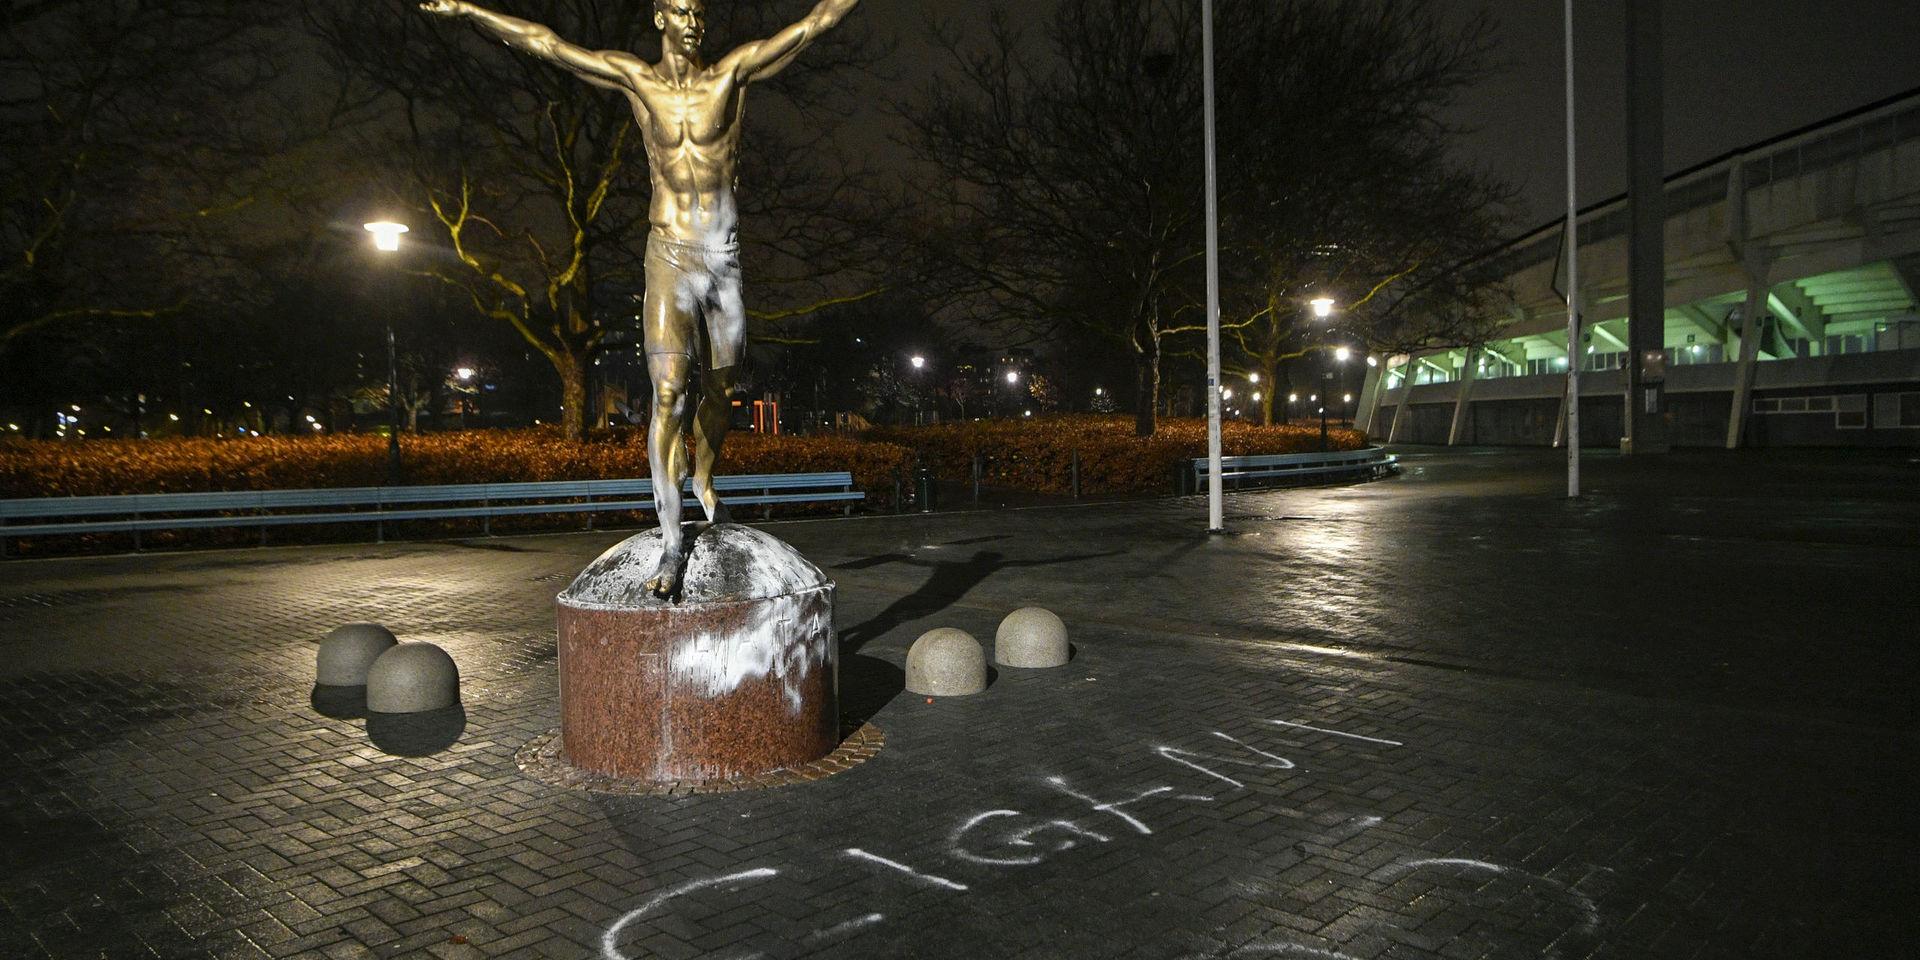 Zlatans staty utanför Stadion i Malmö vandaliserades på onsdagen, vilket nu utreds av polisen som misstänkt hatbrott.